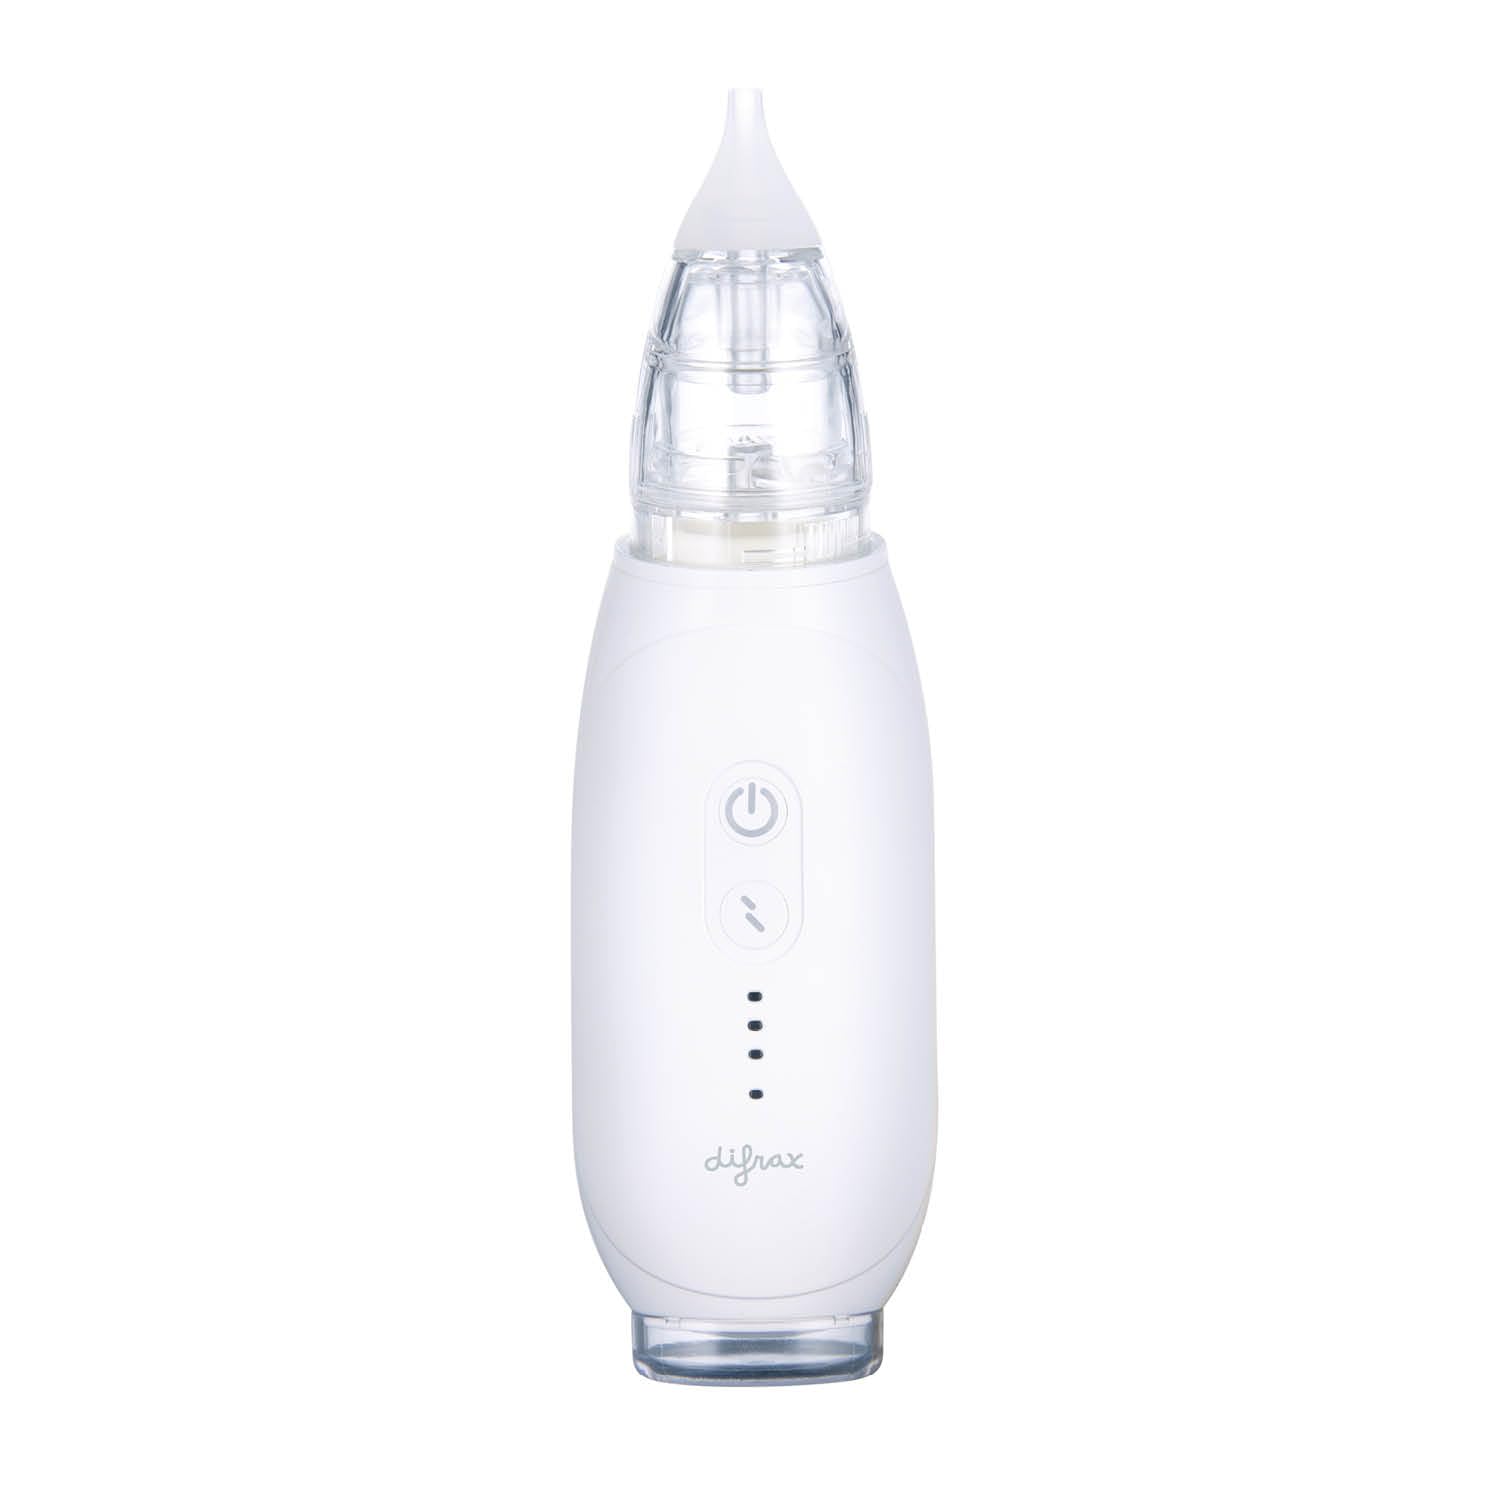 Difrax Elektrischer Nasendusche für Babys Wiederaufladbar, 3 Saugstärken, 2 GrößEn Silikon Tipps - Weiß